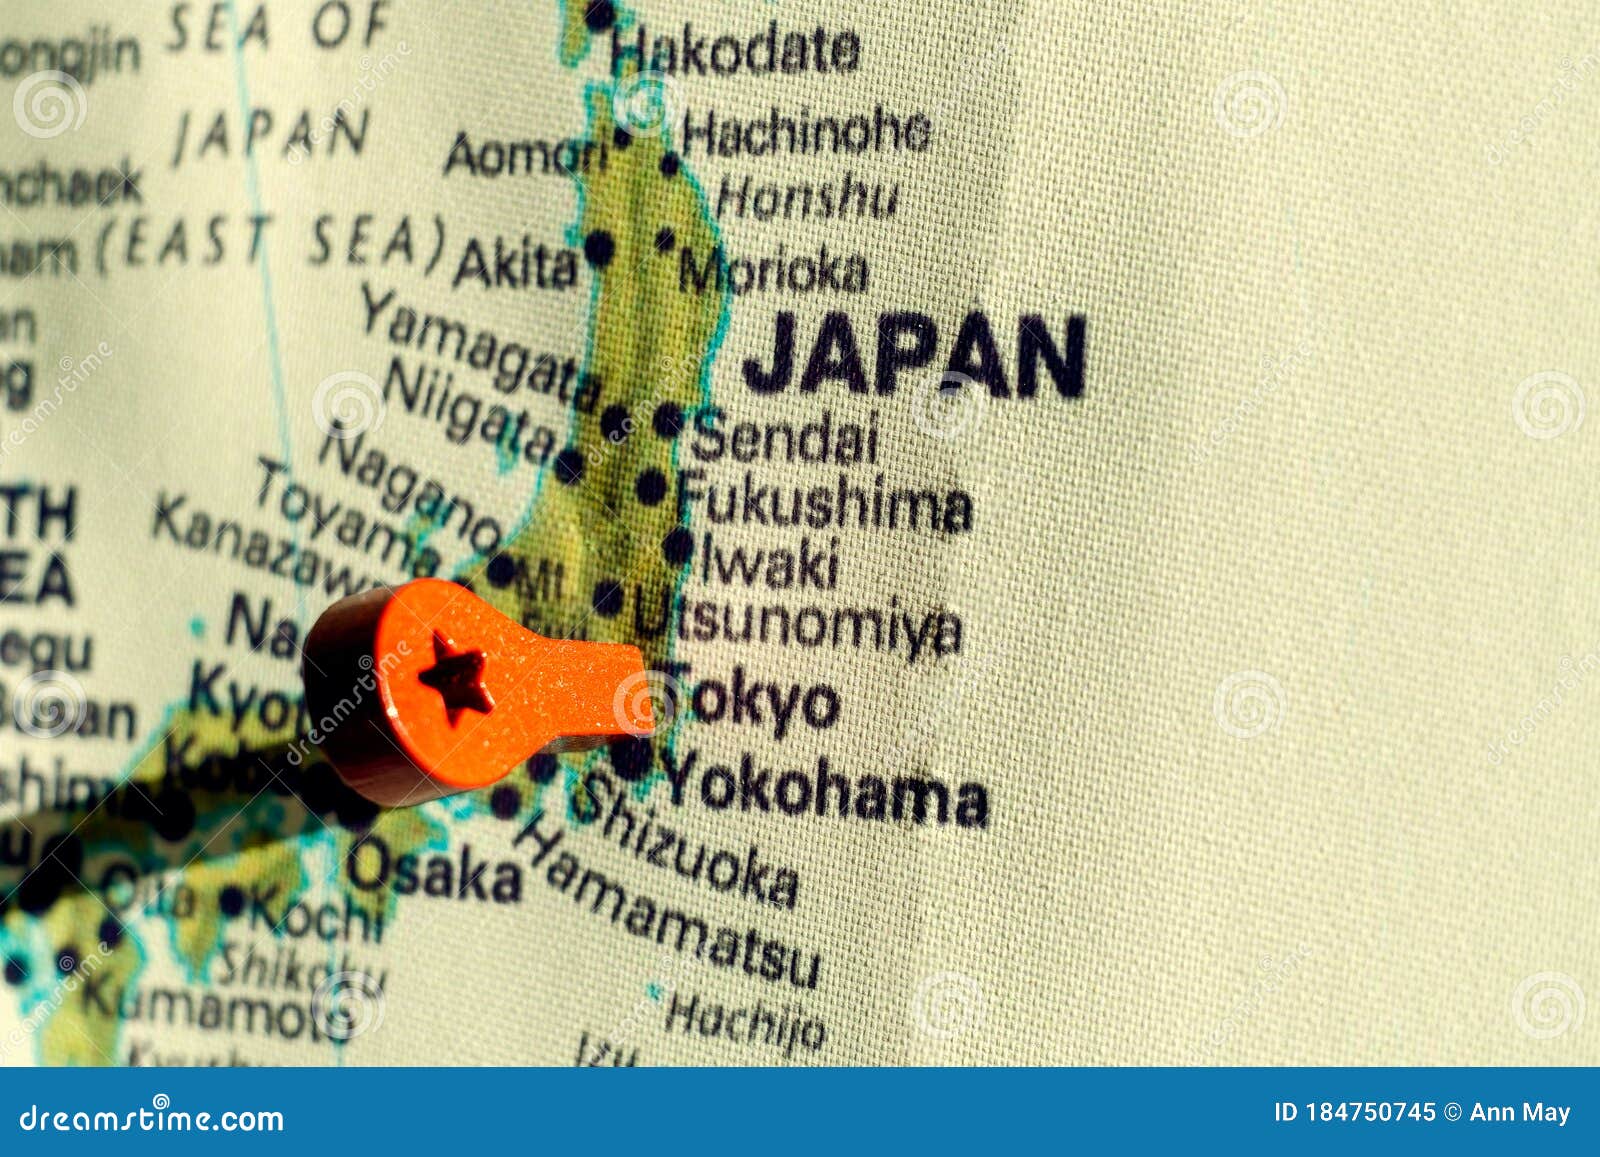 marker on the map near tokio